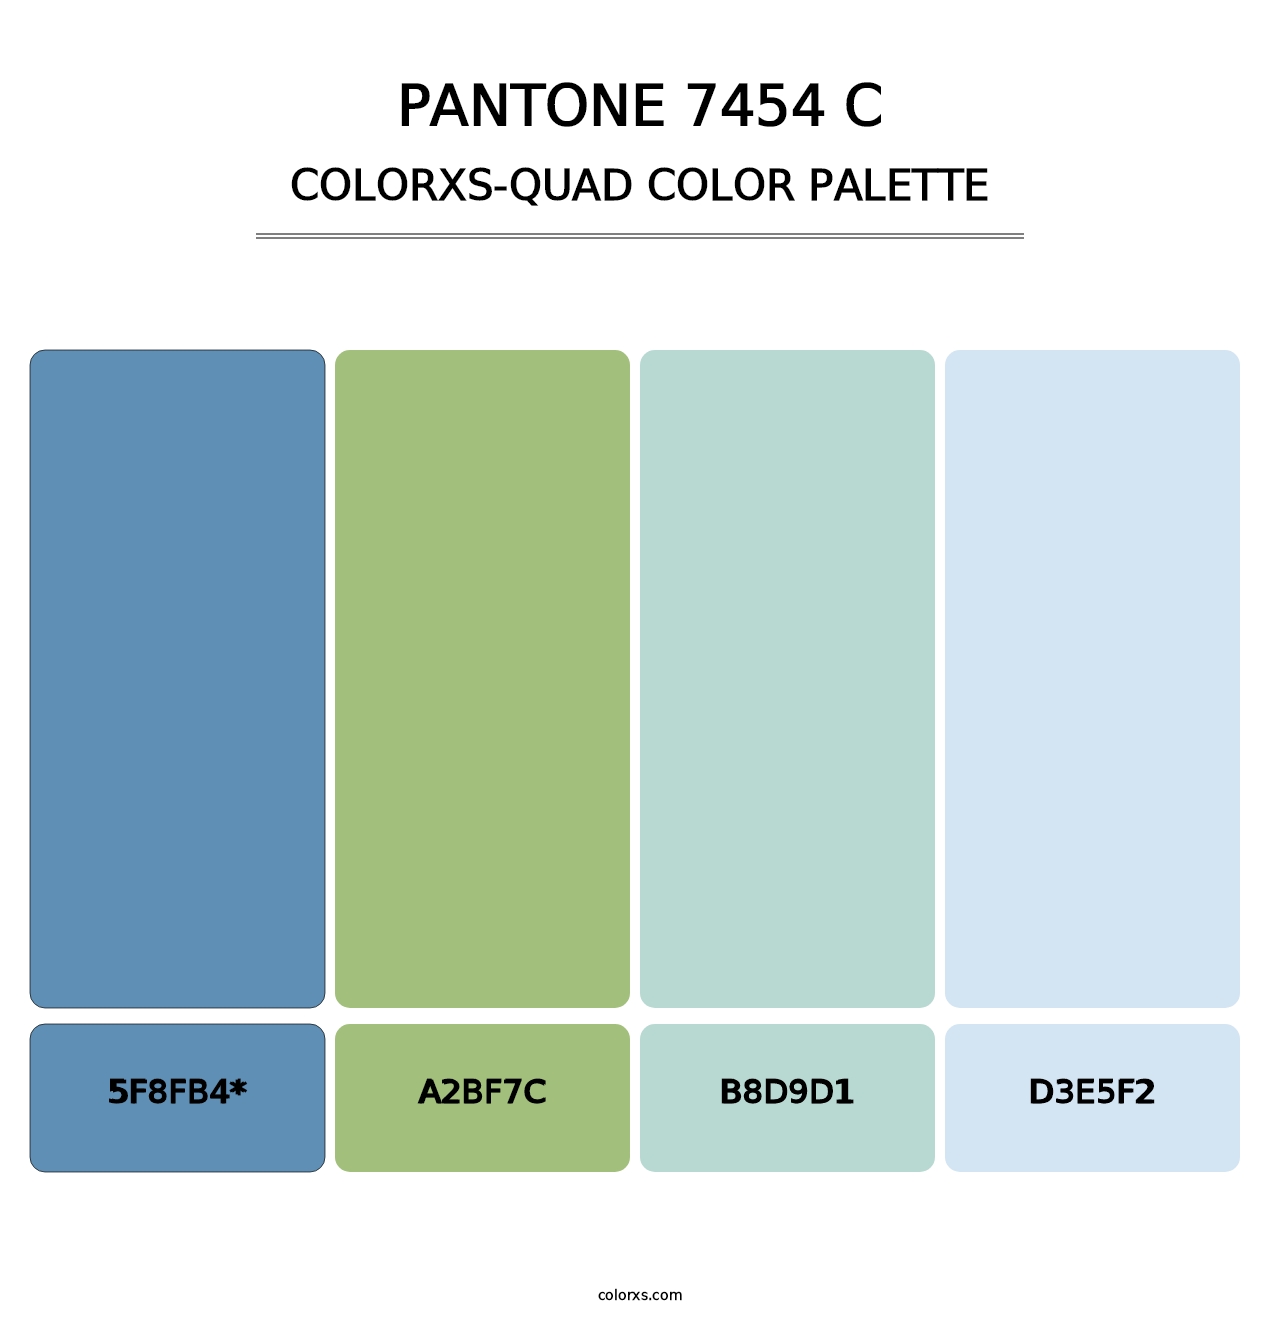 PANTONE 7454 C - Colorxs Quad Palette